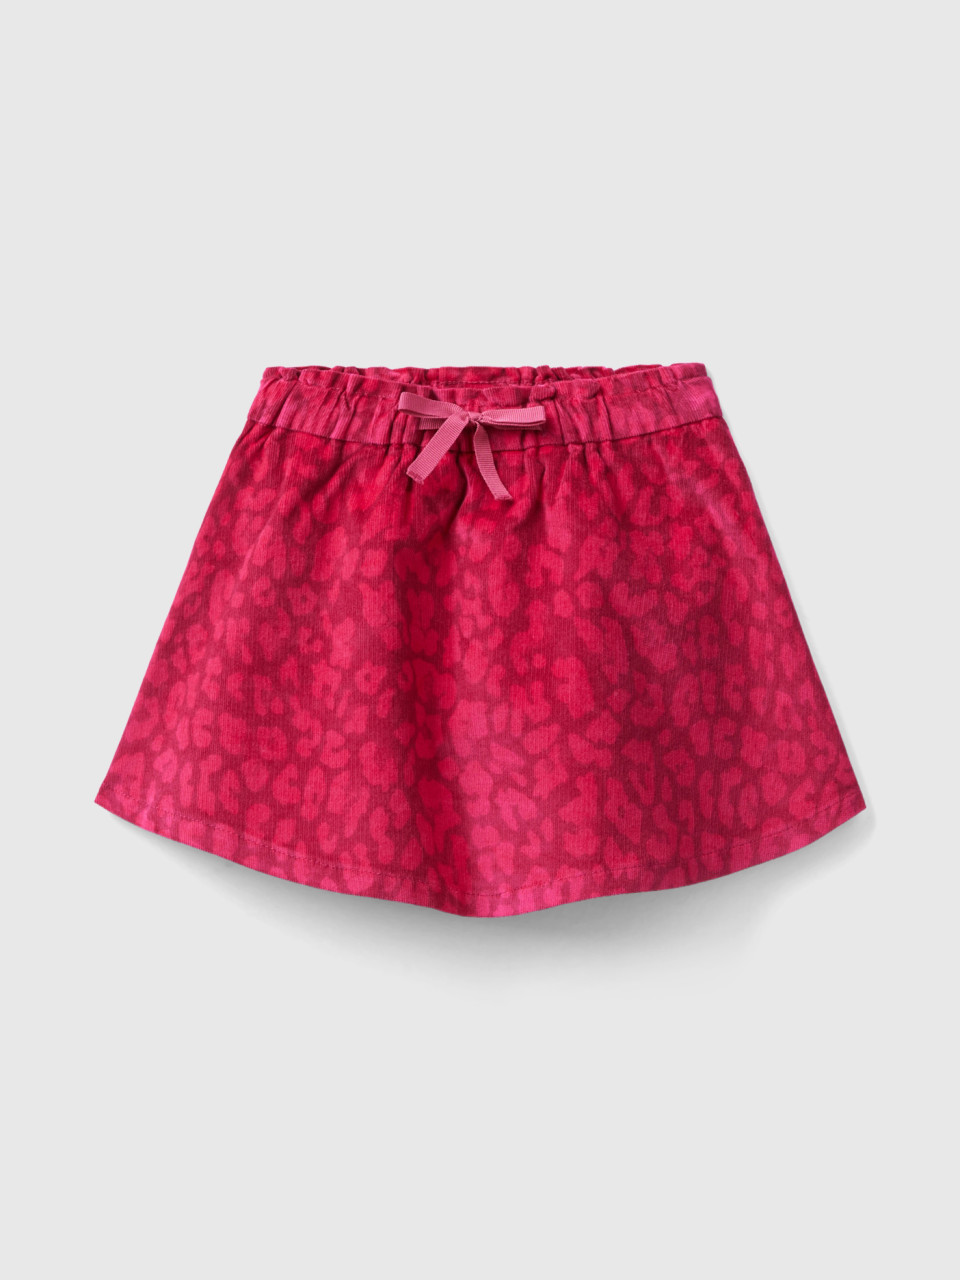 Benetton, Animal Print Velvet Mini Skirt, Multi-color, Kids